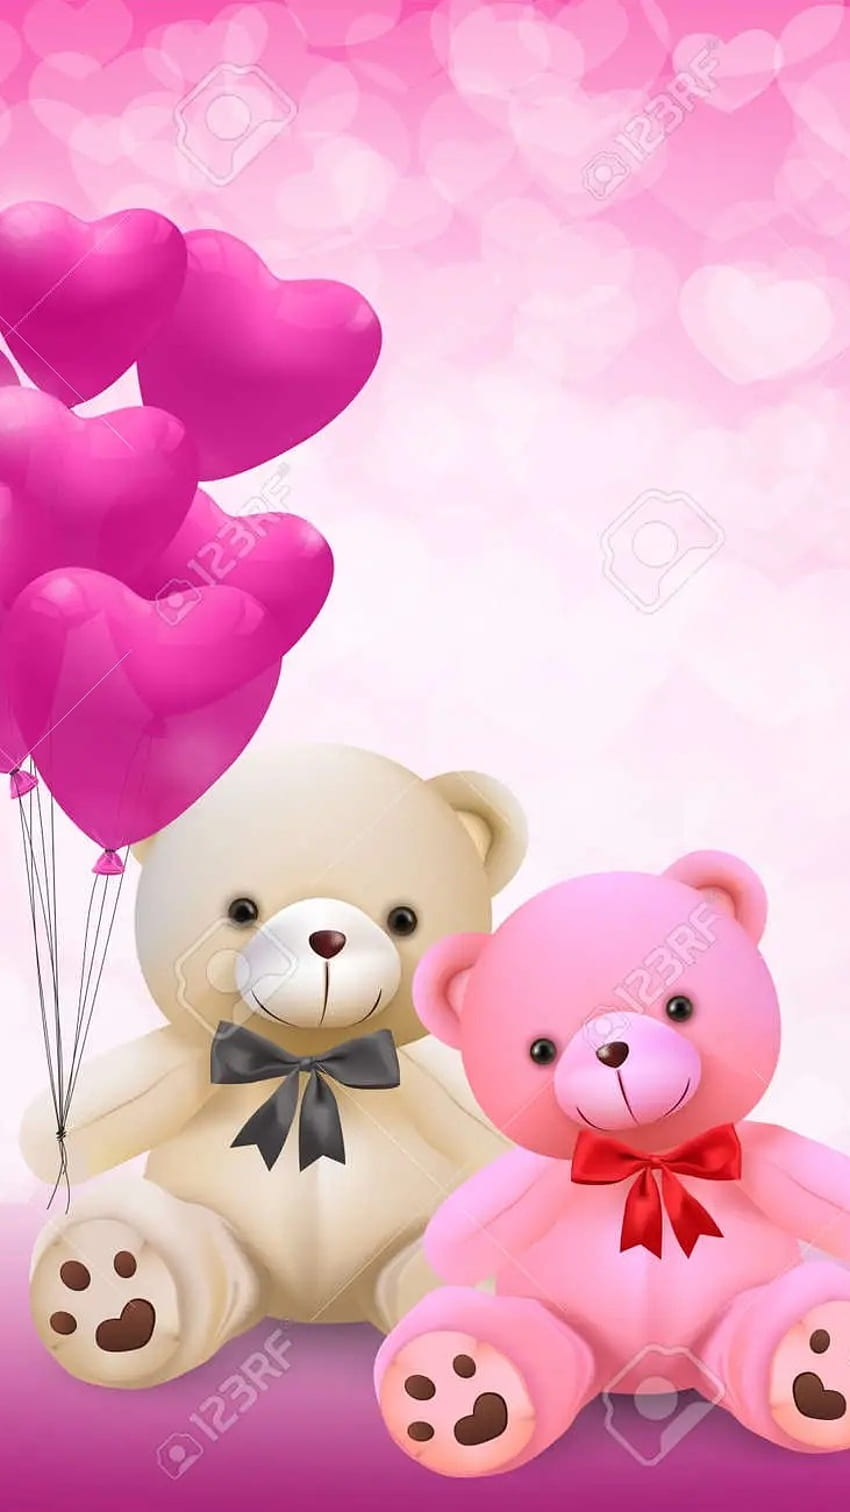 Pink teddy bear HD wallpapers | Pxfuel